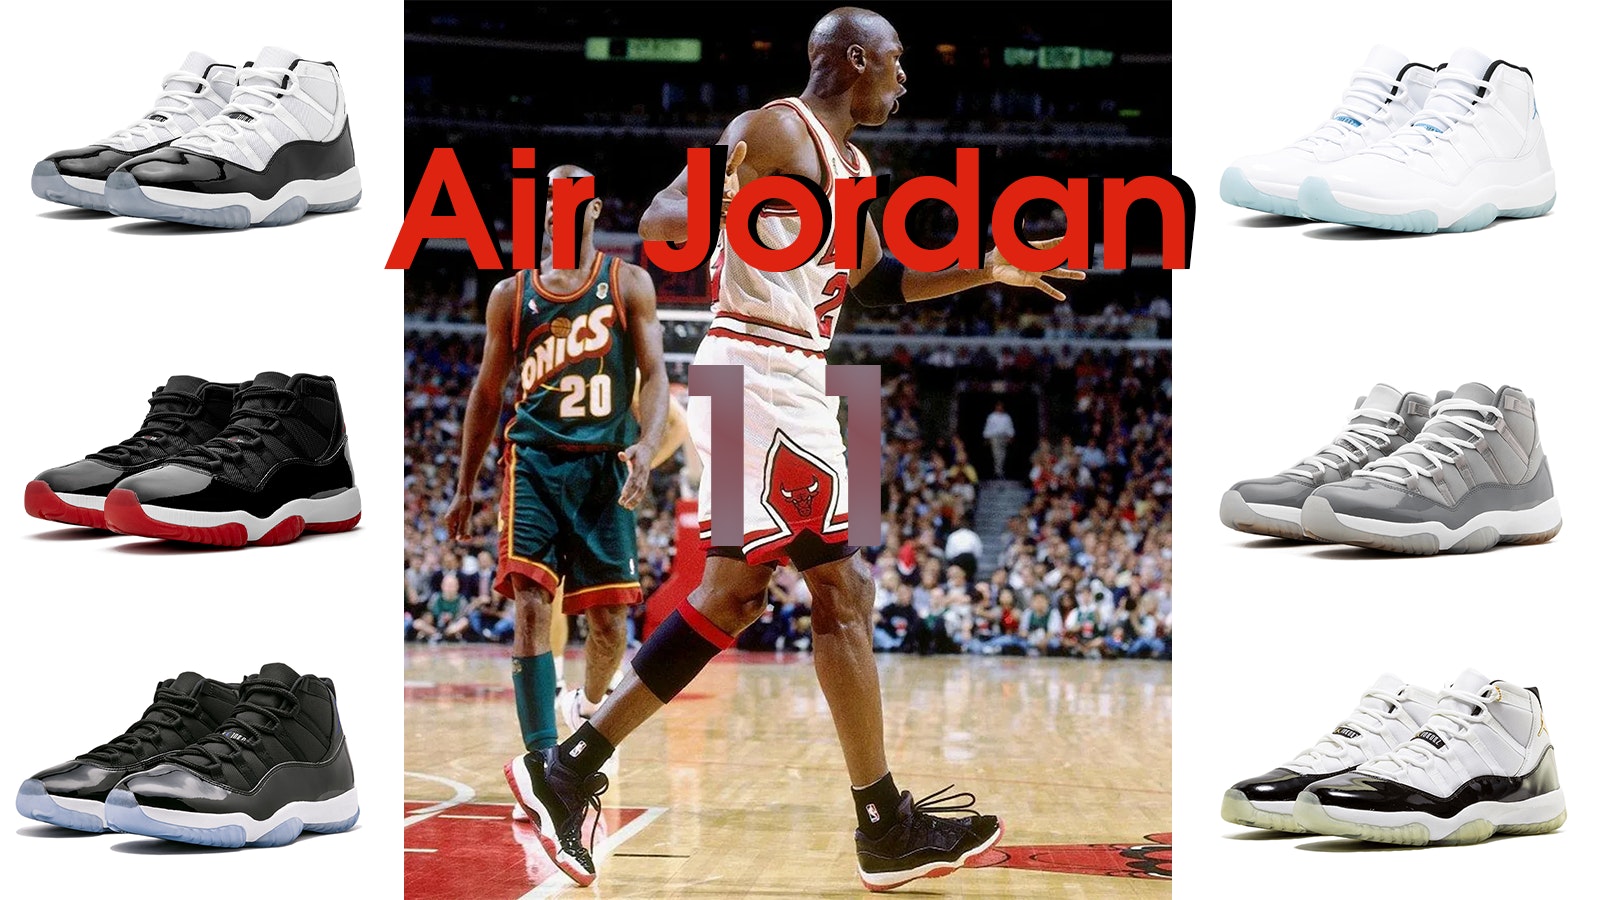 Air Jordan 11 Review